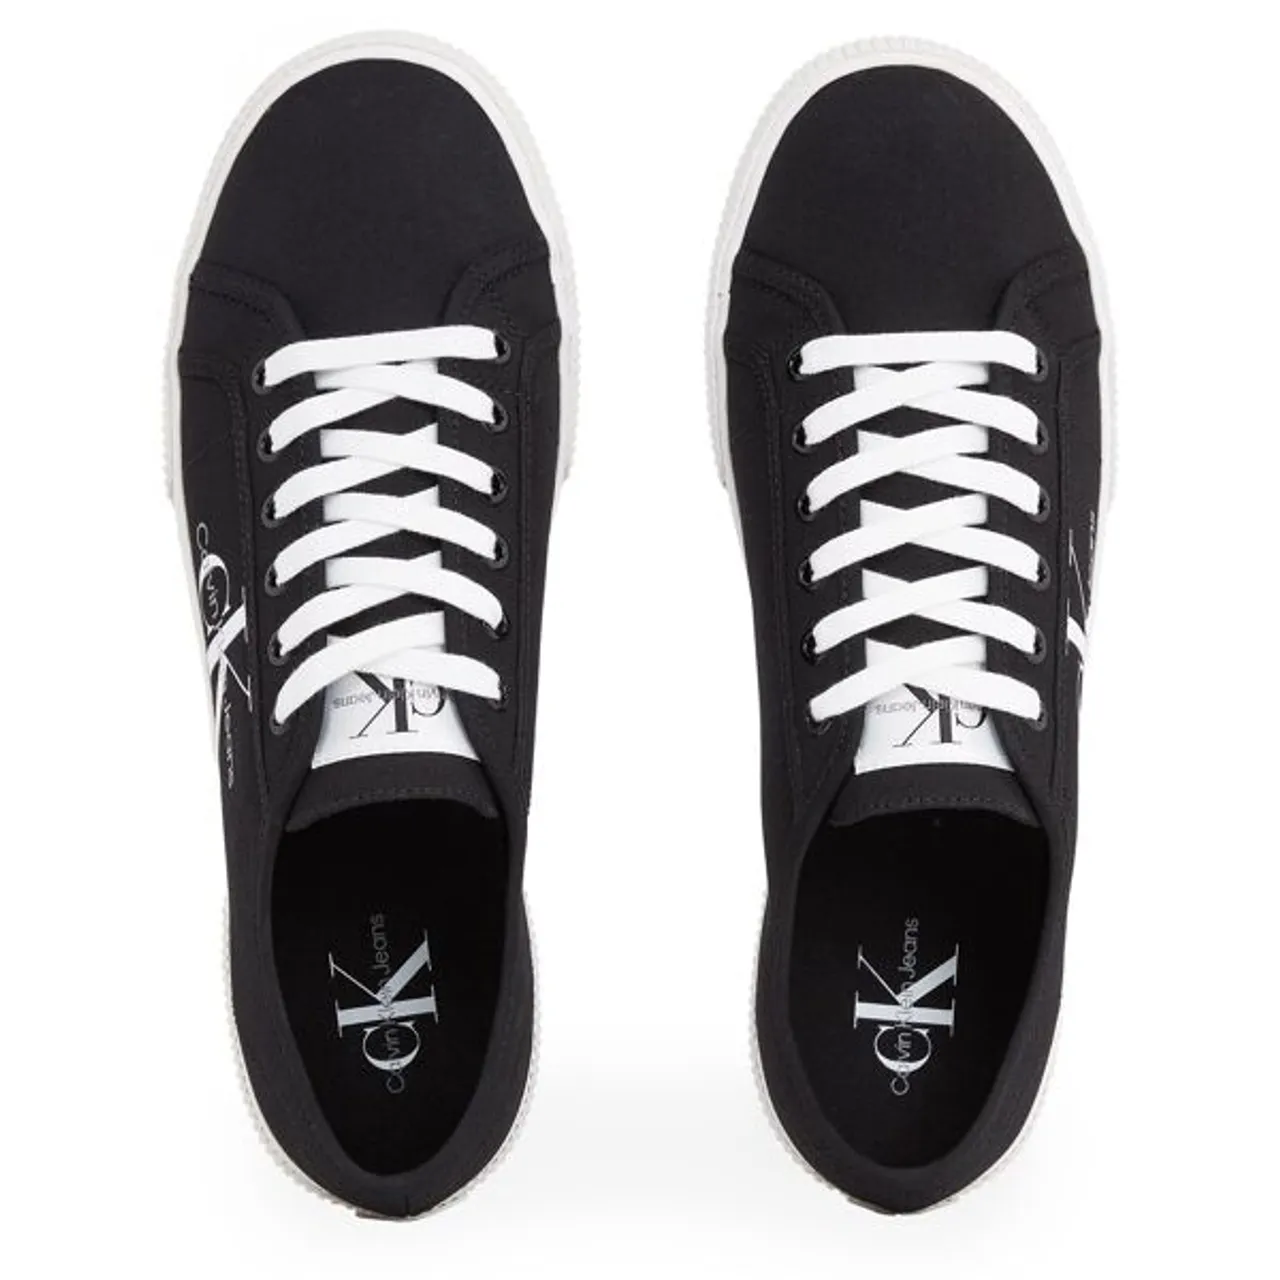 Sneaker CALVIN KLEIN JEANS "SEBO 3D *I" Gr. 44, schwarz-weiß (schwarz, weiß) Herren Schuhe Schnürhalbschuhe